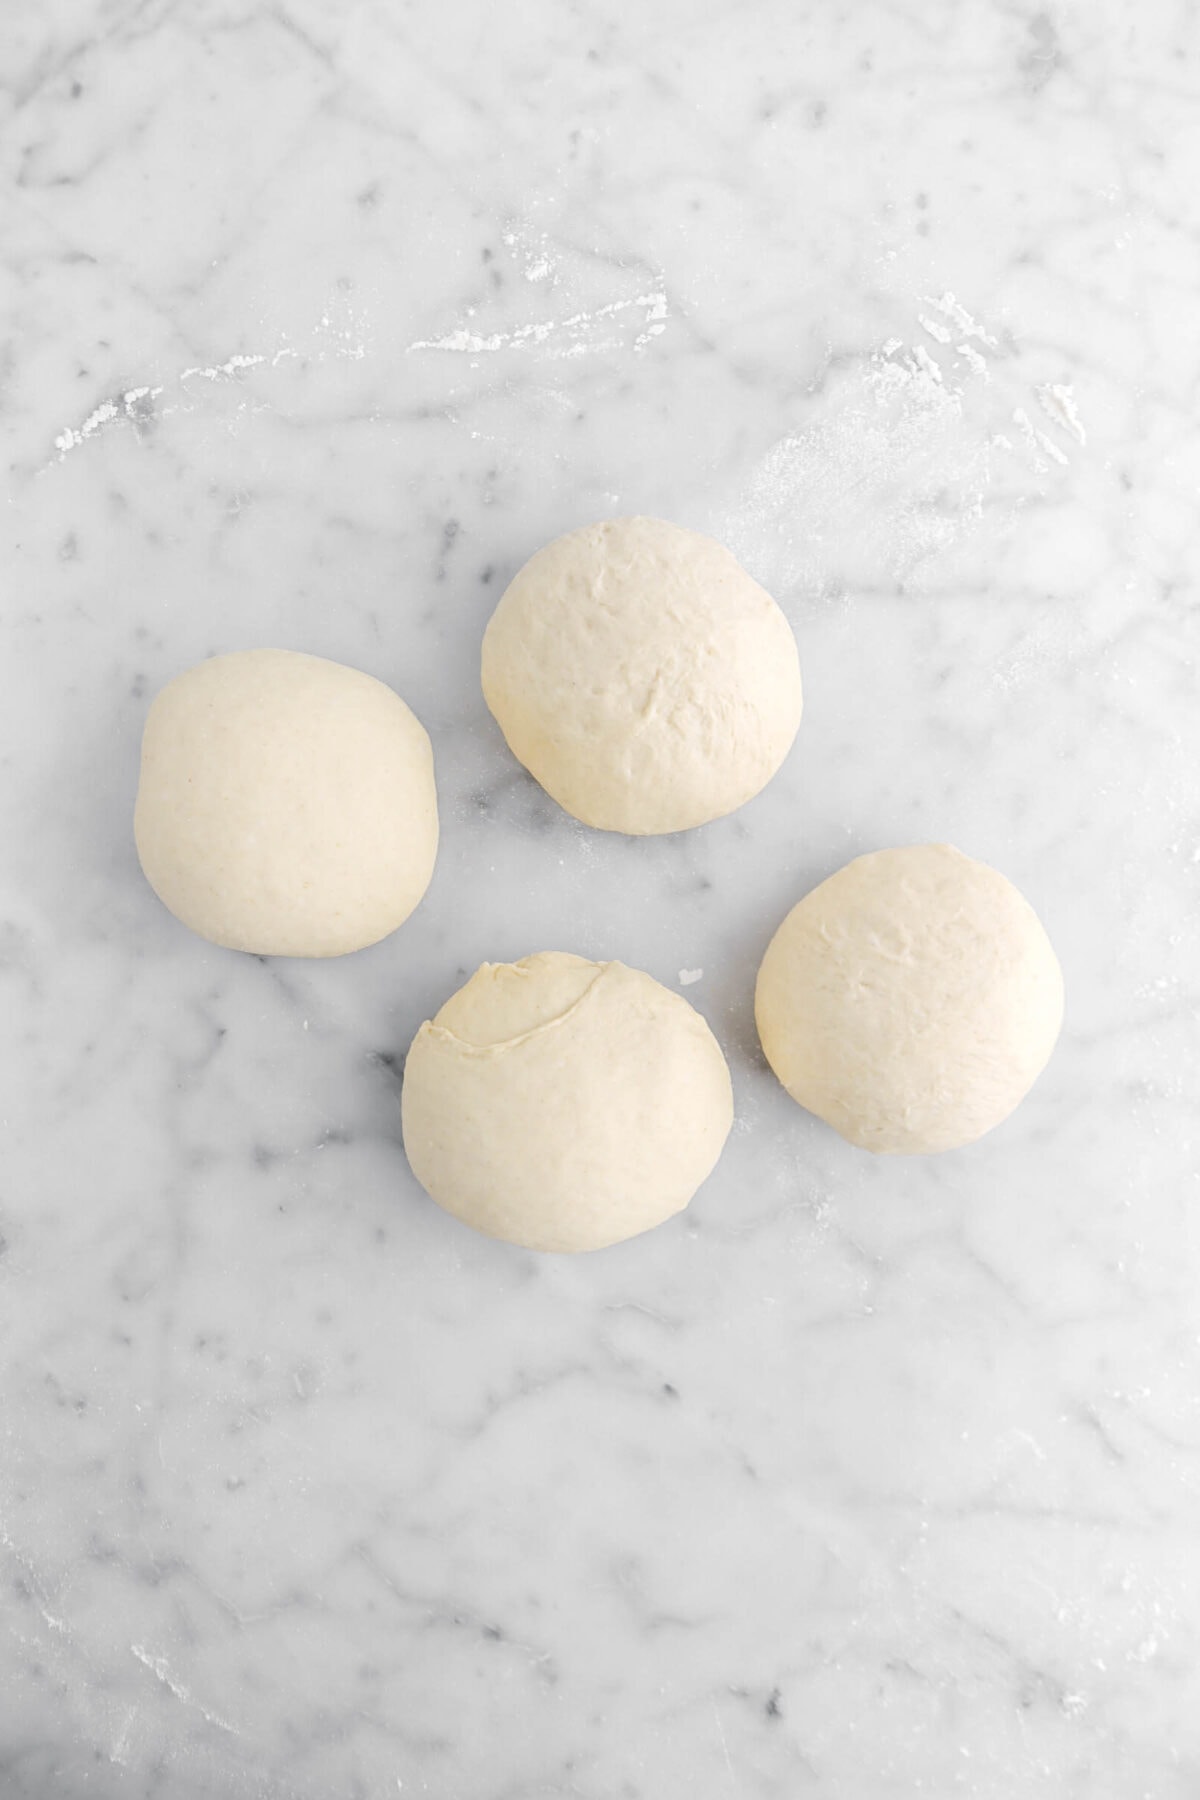 dough divided into four balls.